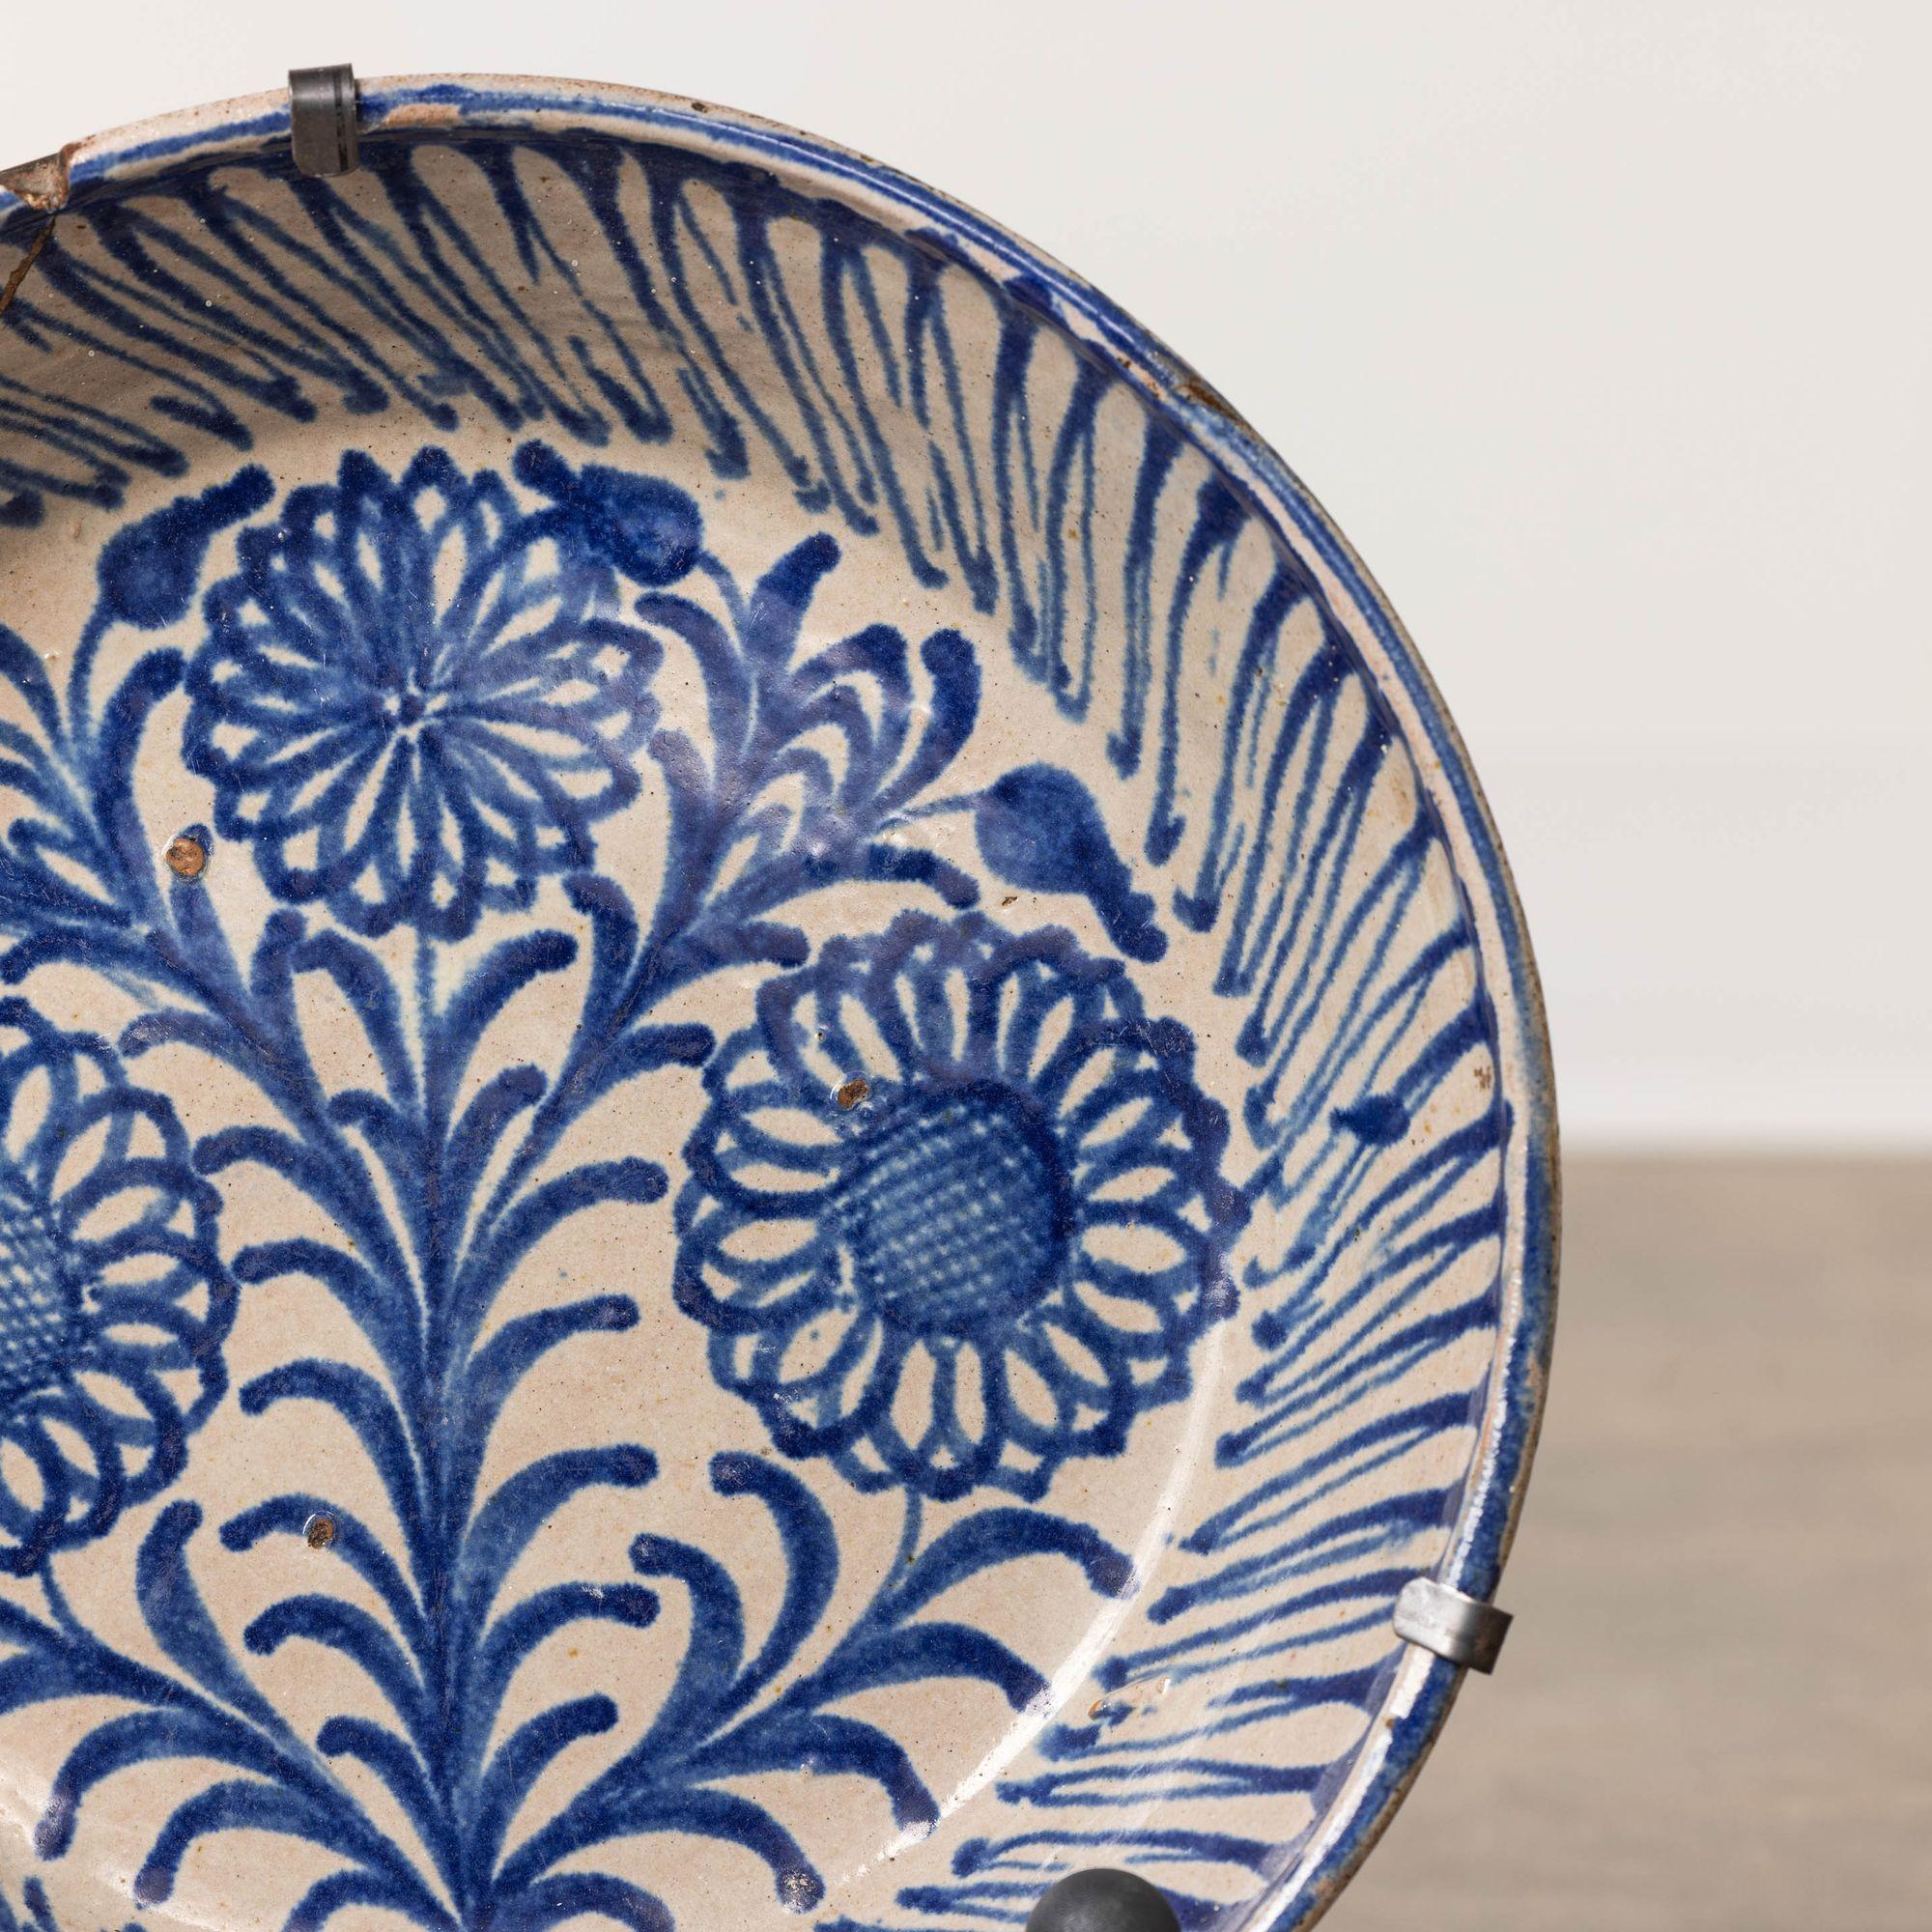 19th Century 19th c. Spanish Blue and White Fajalauza Lebrillo Bowl from Granada For Sale